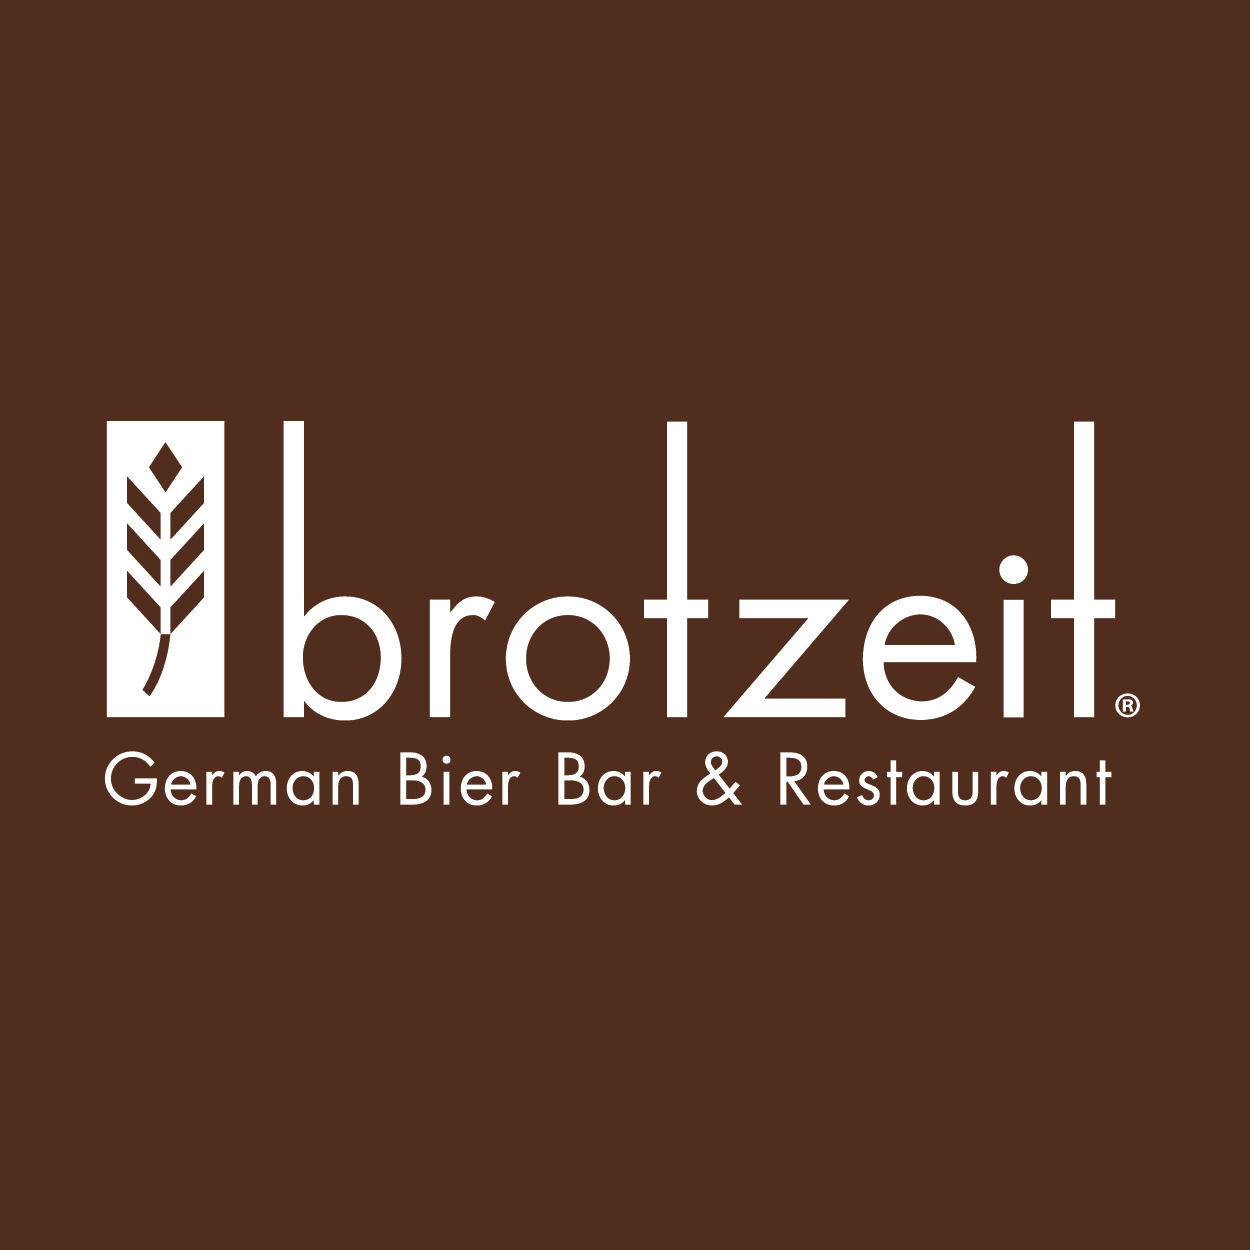 brotzeit German Bier Bar & Restaurant